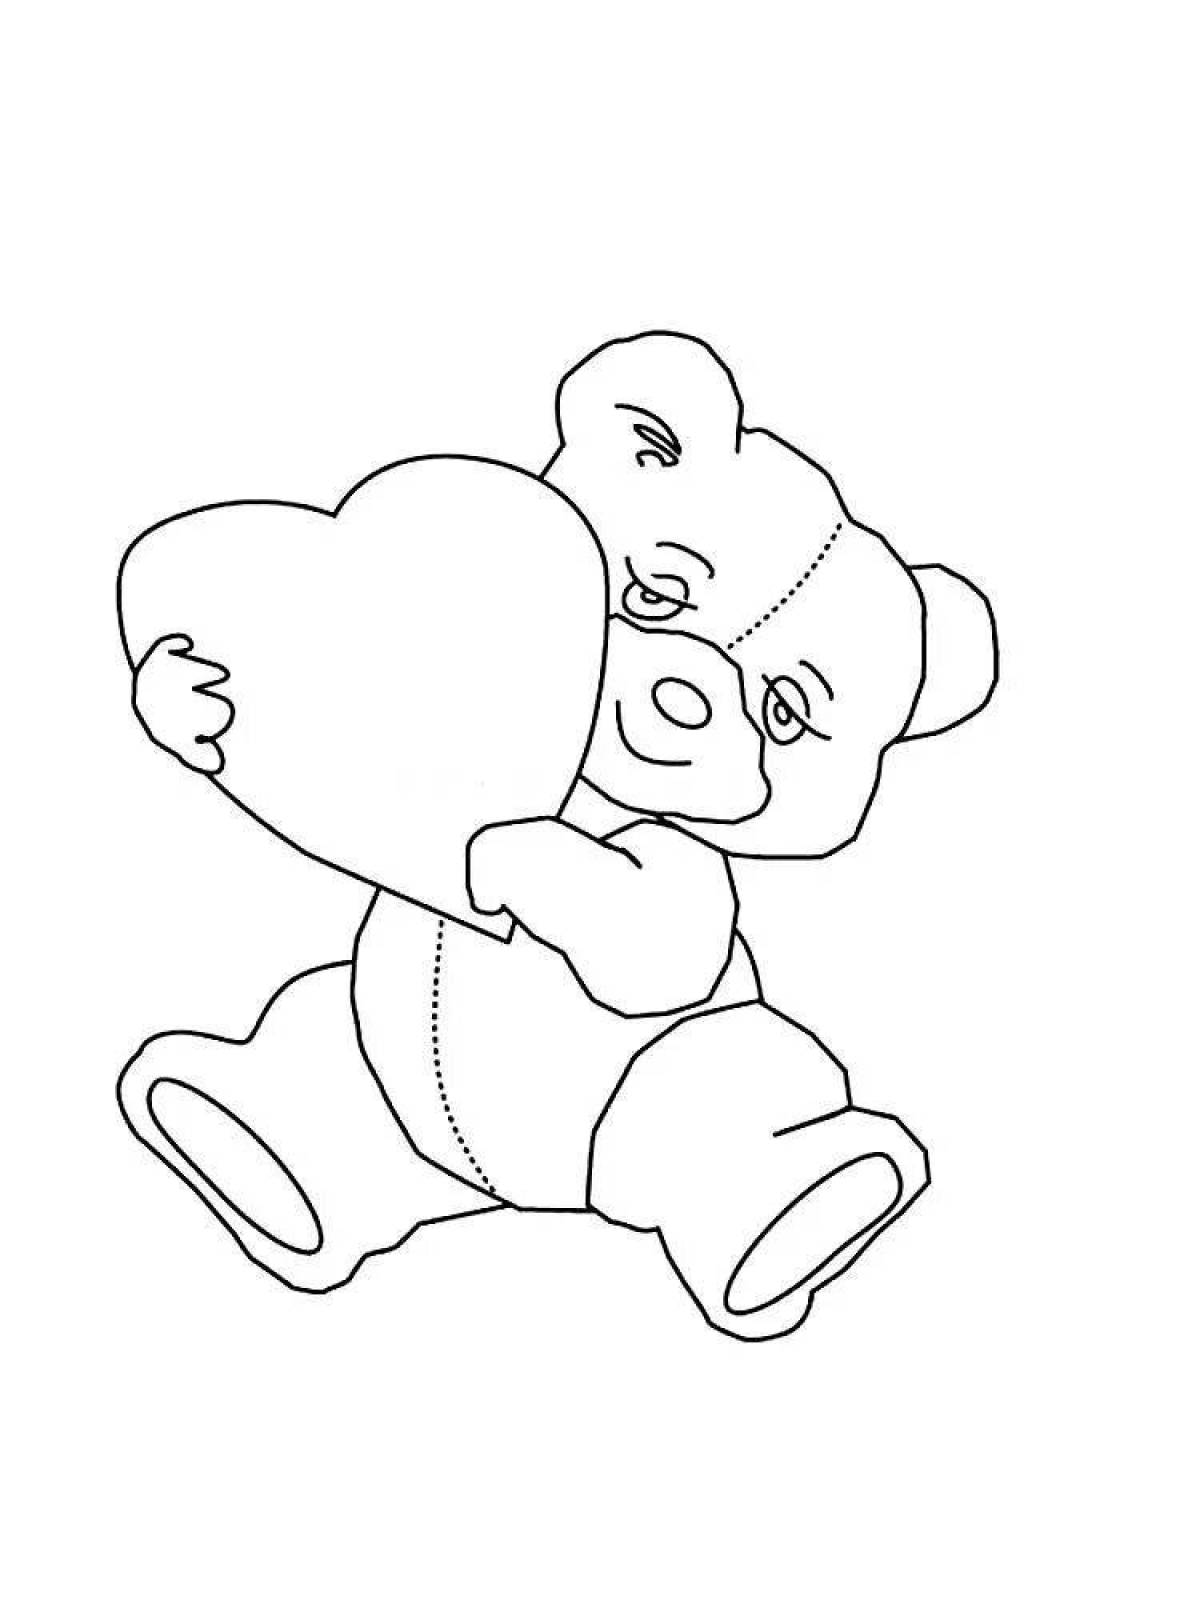 Раскраска мишка Тедди с сердцем